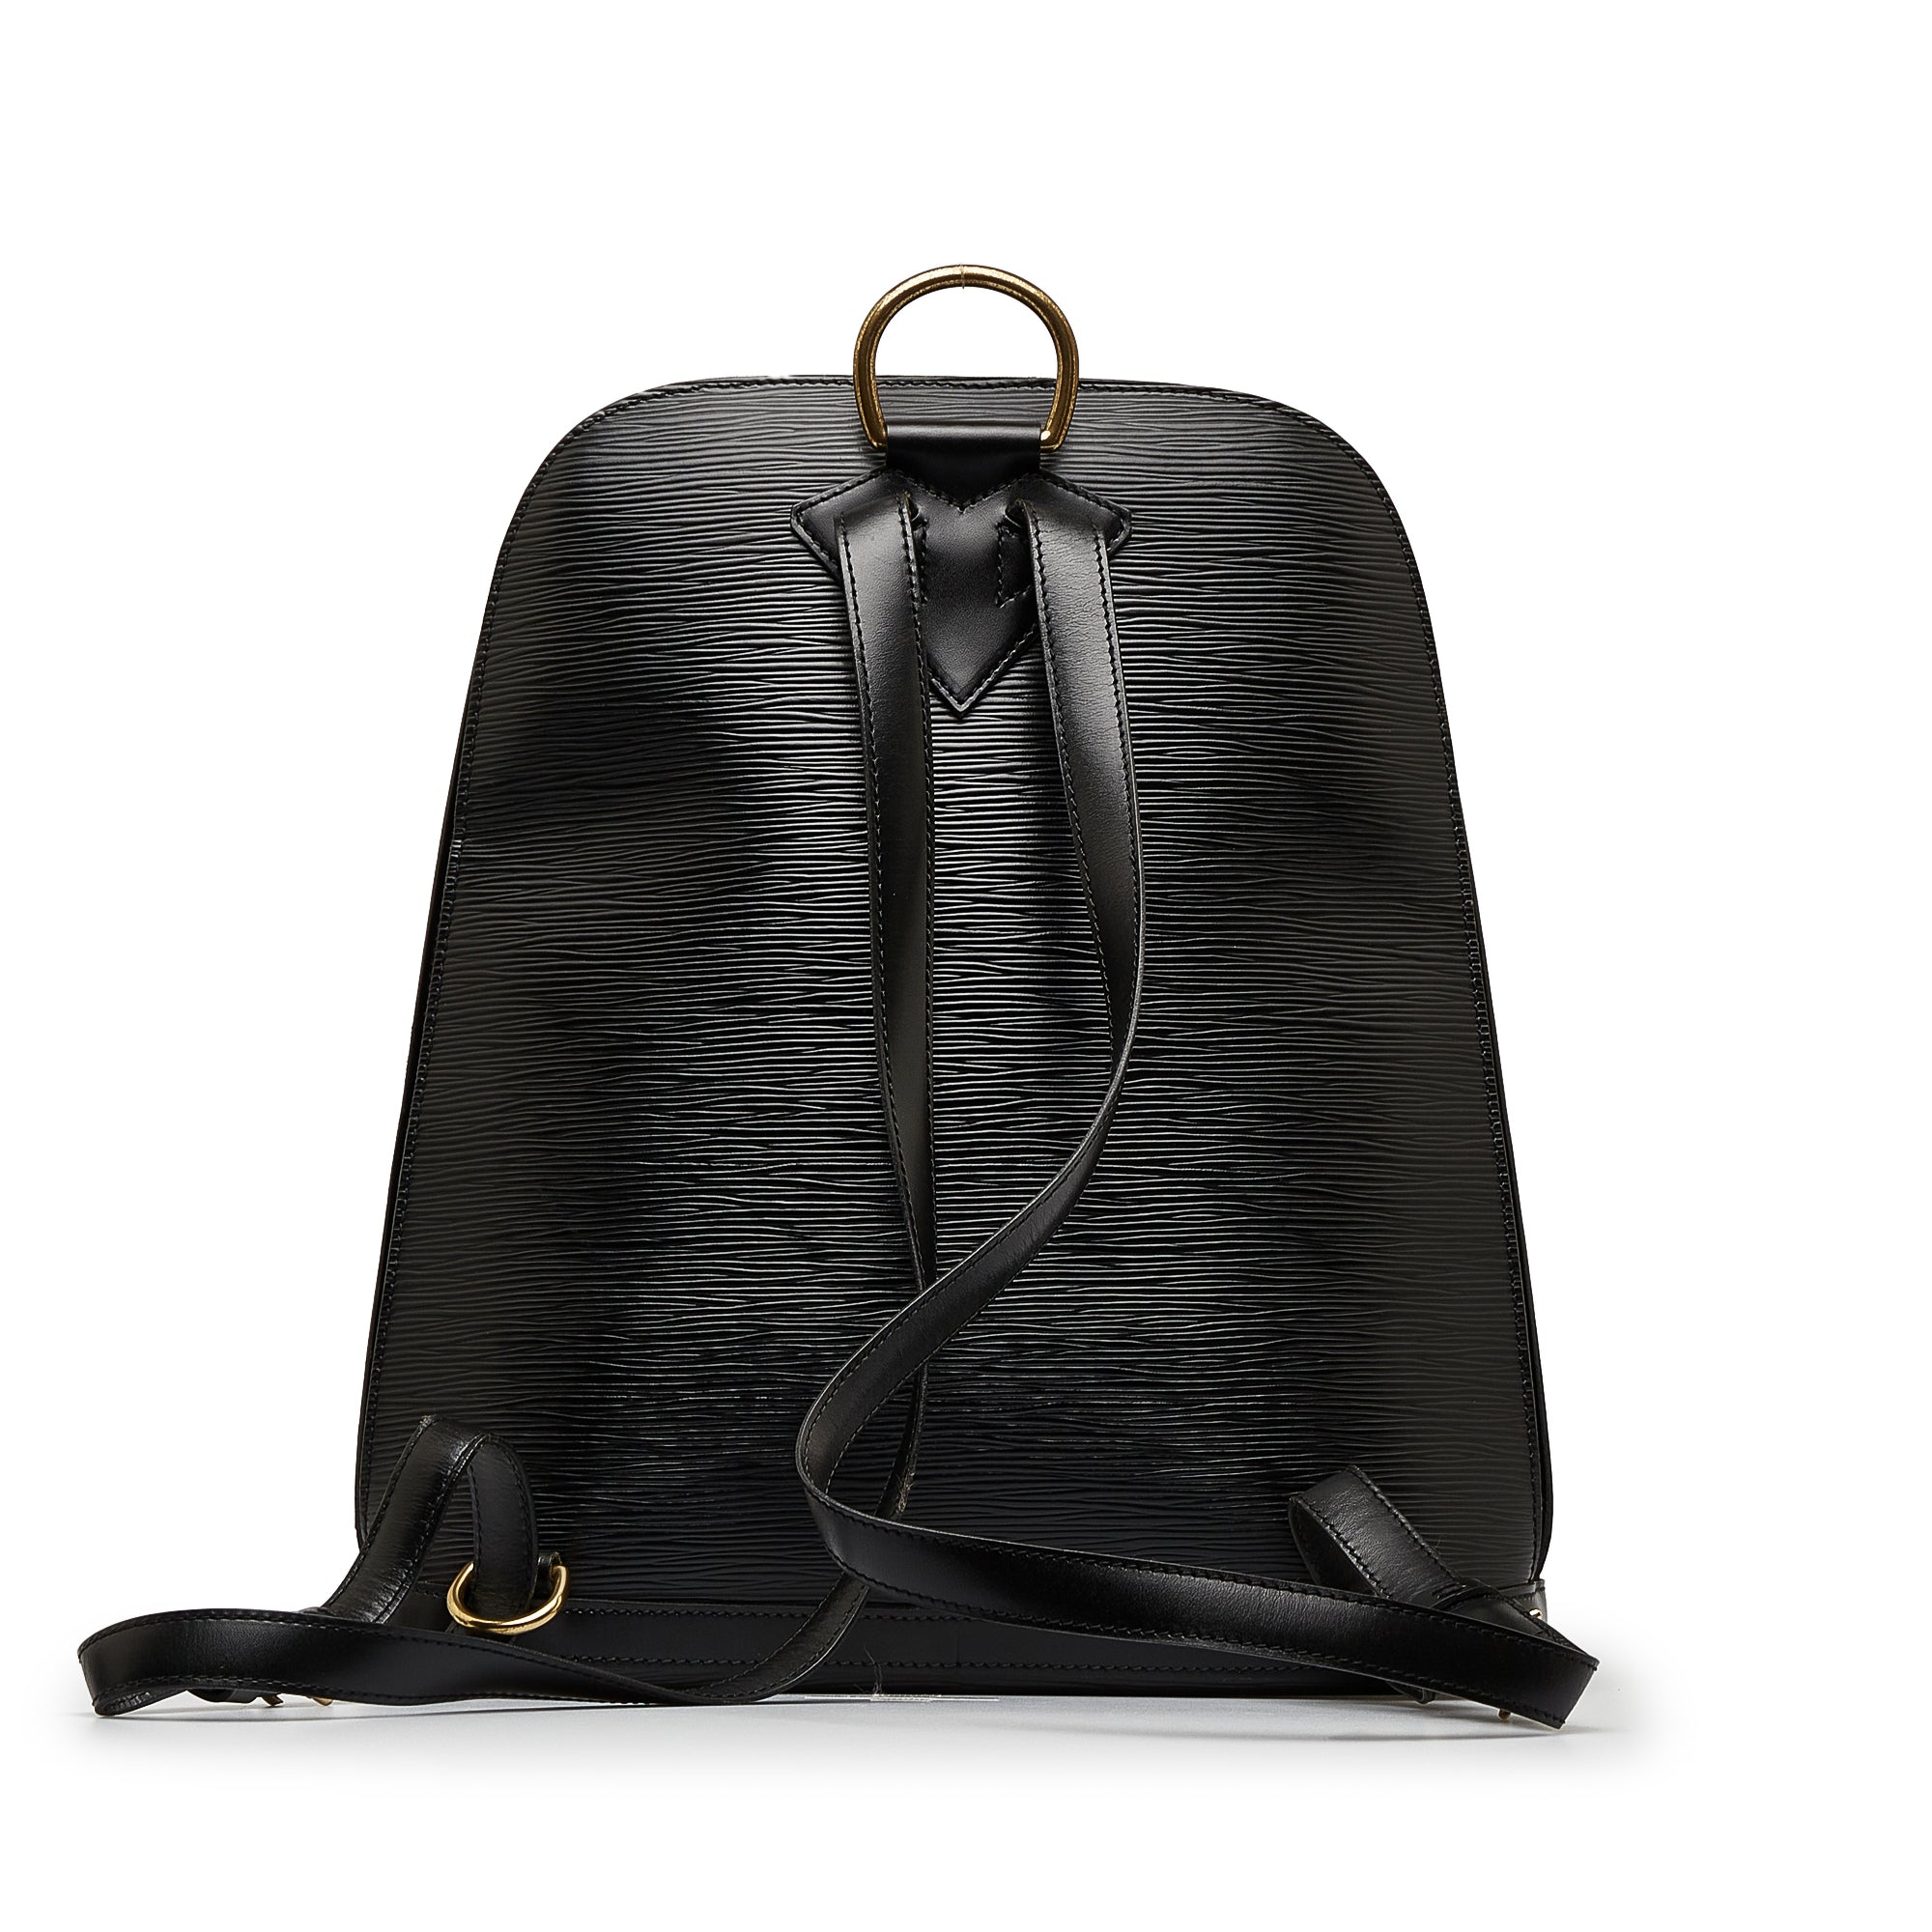 Gobelins Backpack Epi Leather